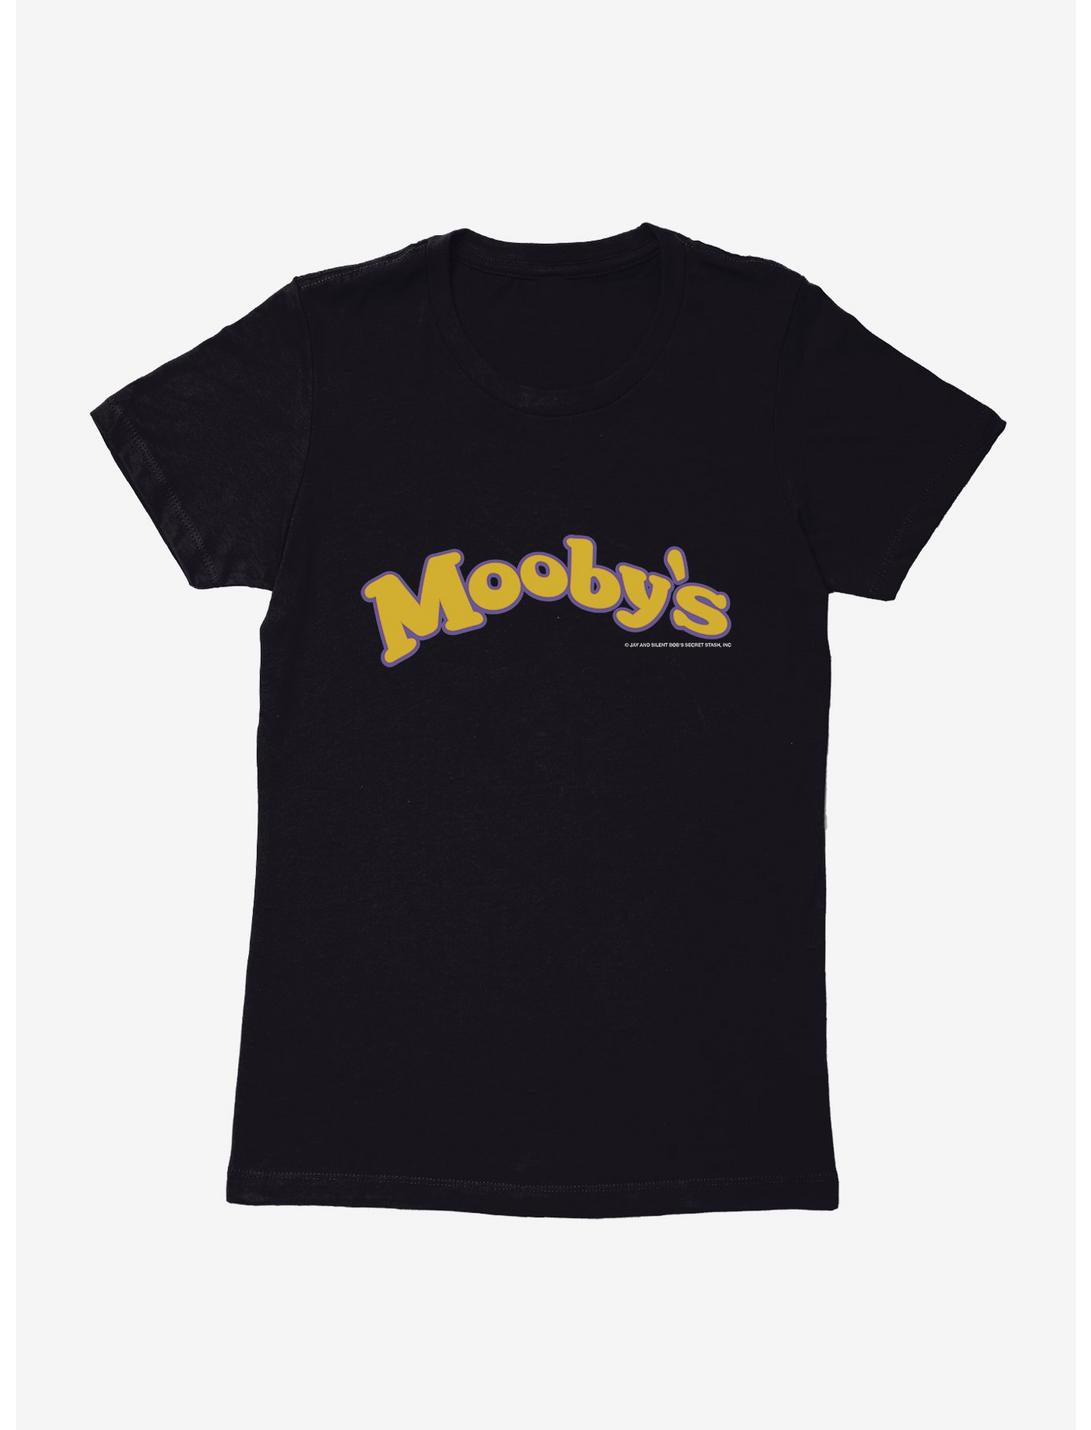 Jay And Silent Bob Reboot Mooby's Name Logo Womens T-Shirt, BLACK, hi-res